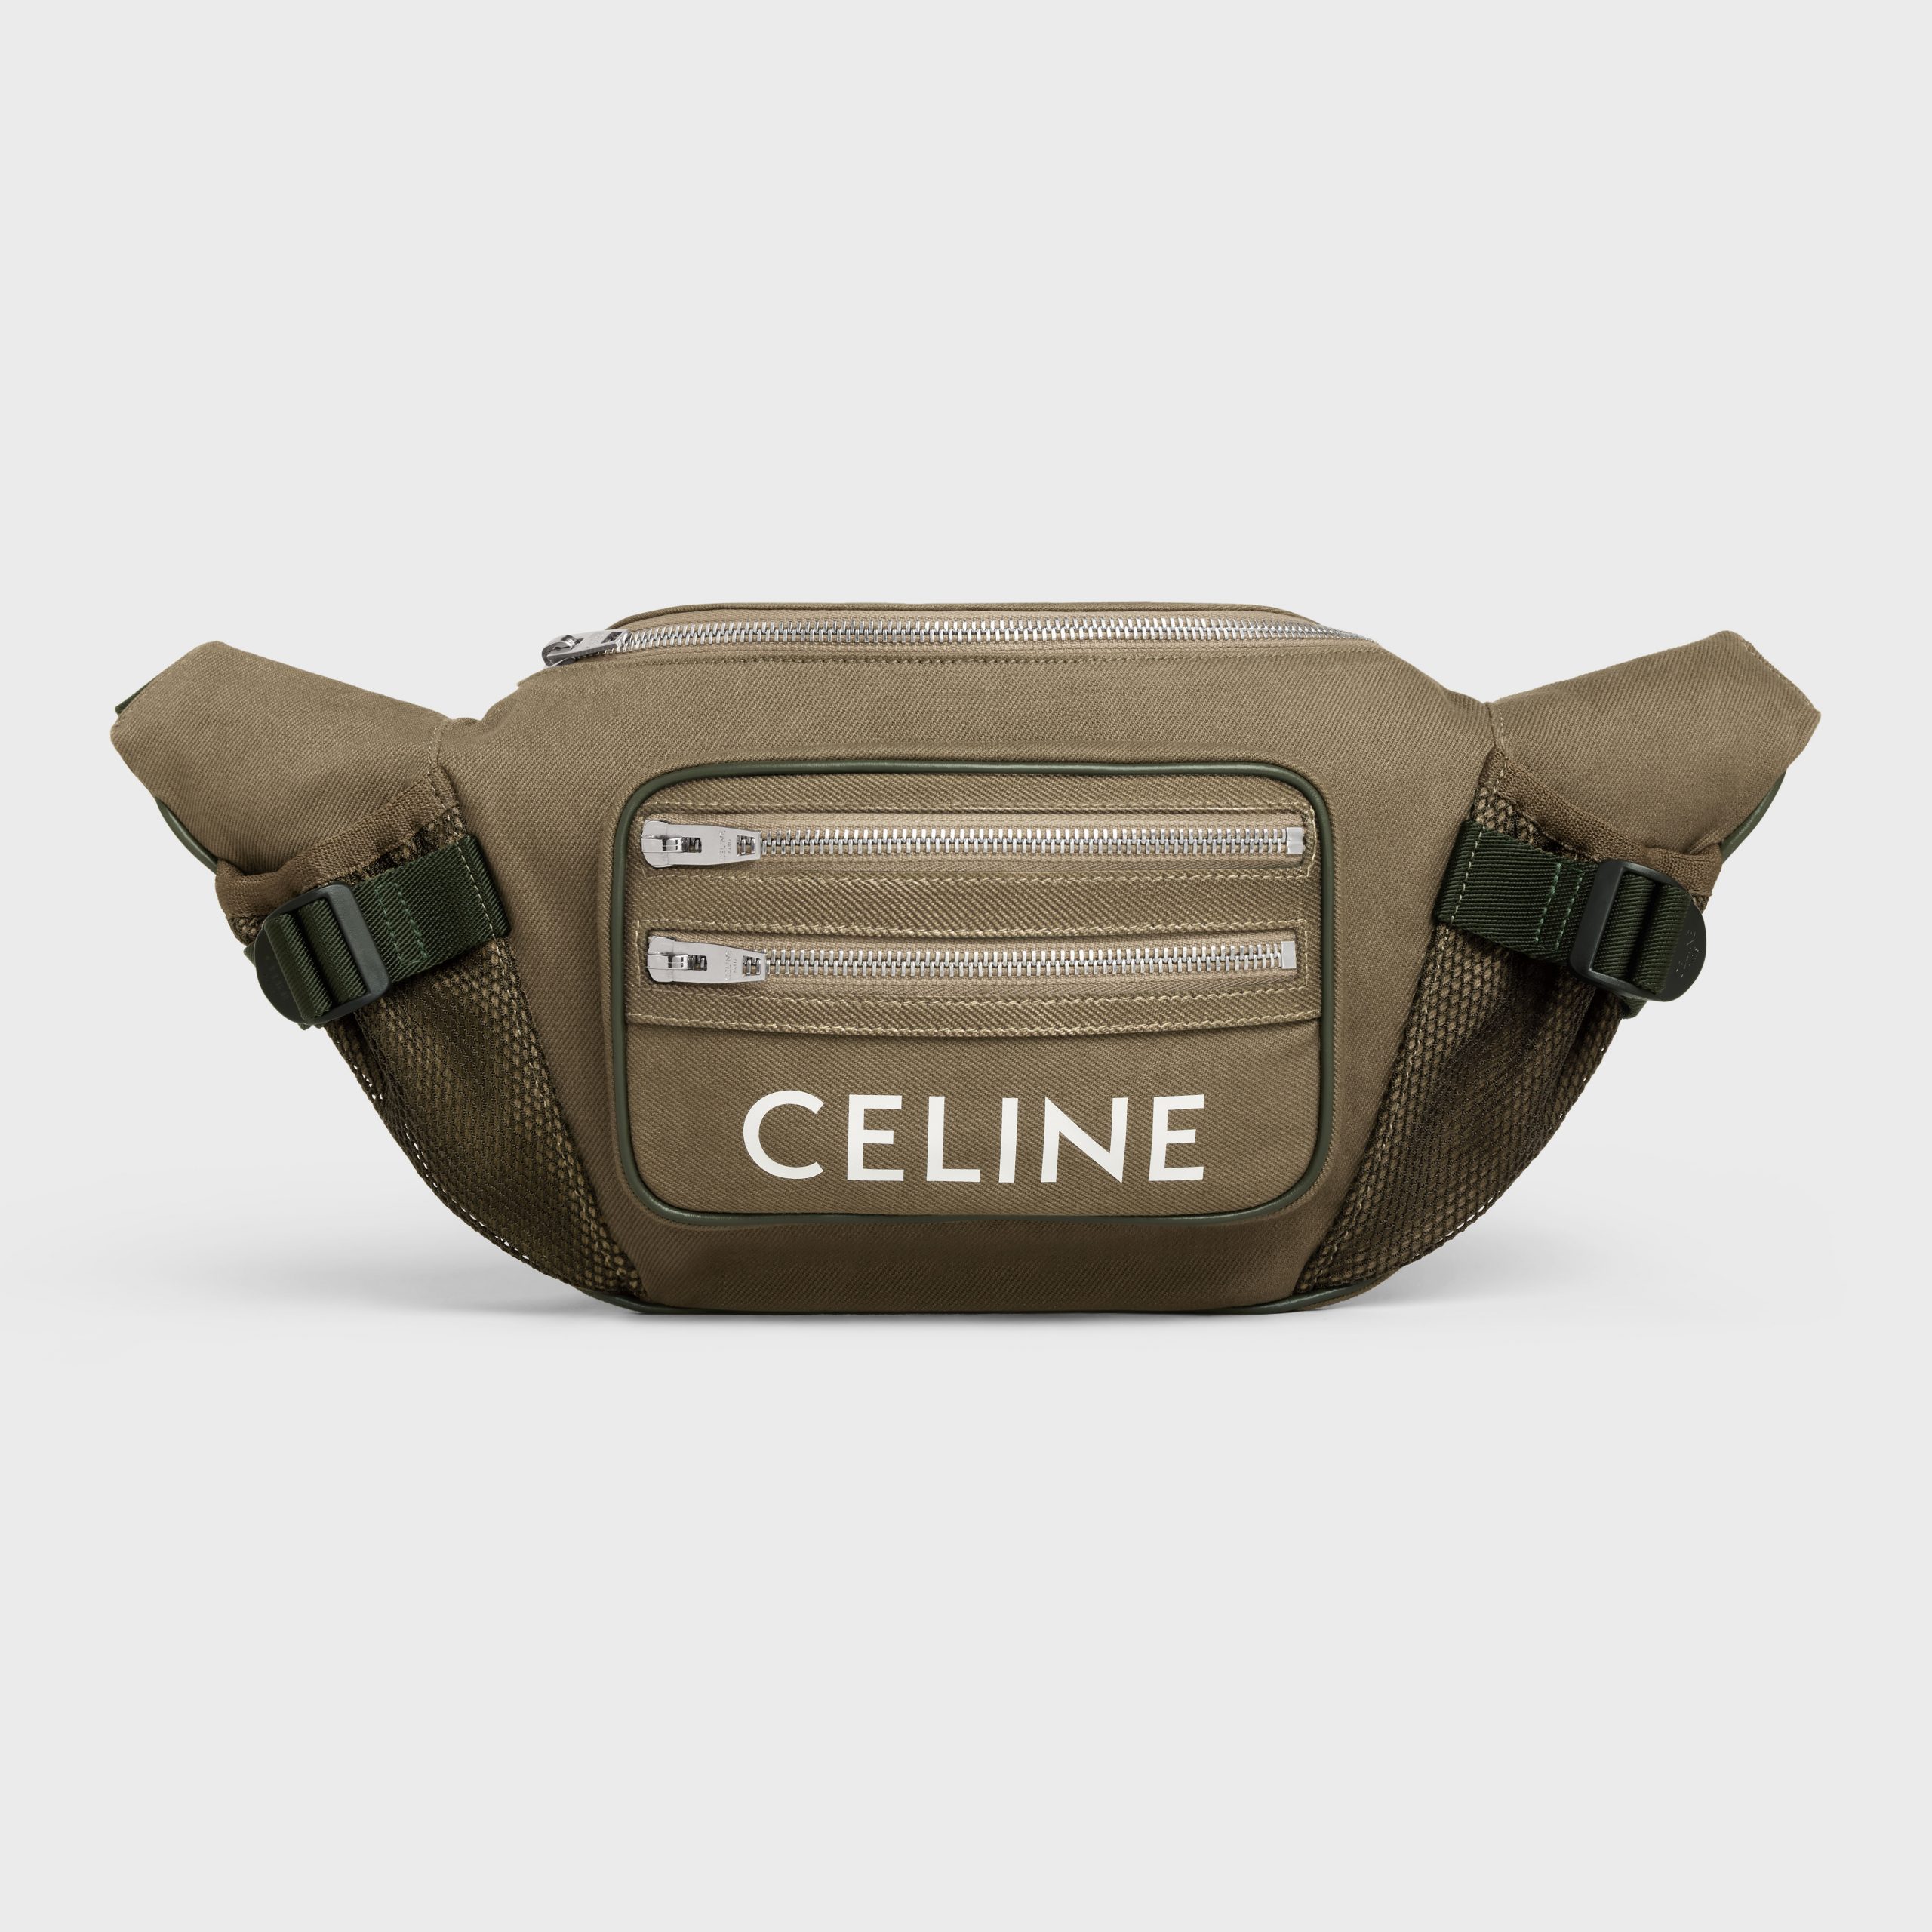 Celine LARGE ZIPPED BELT BAG TREKKING In Cotton Gabardine With Celine Print – Khaki – 198682DO8.15KH